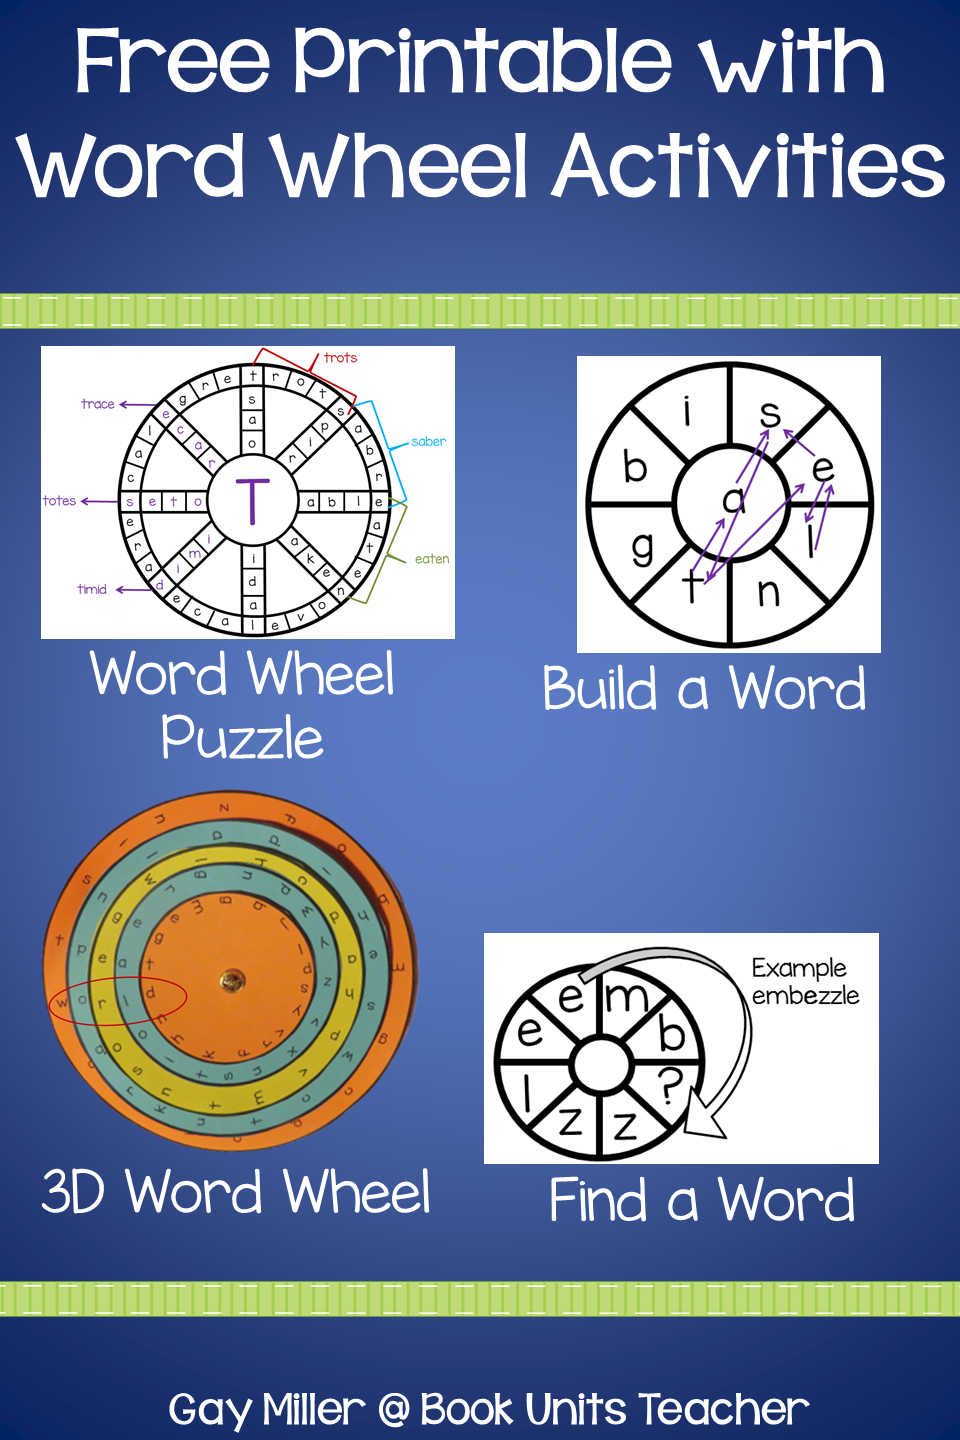 Word Wheel Activities